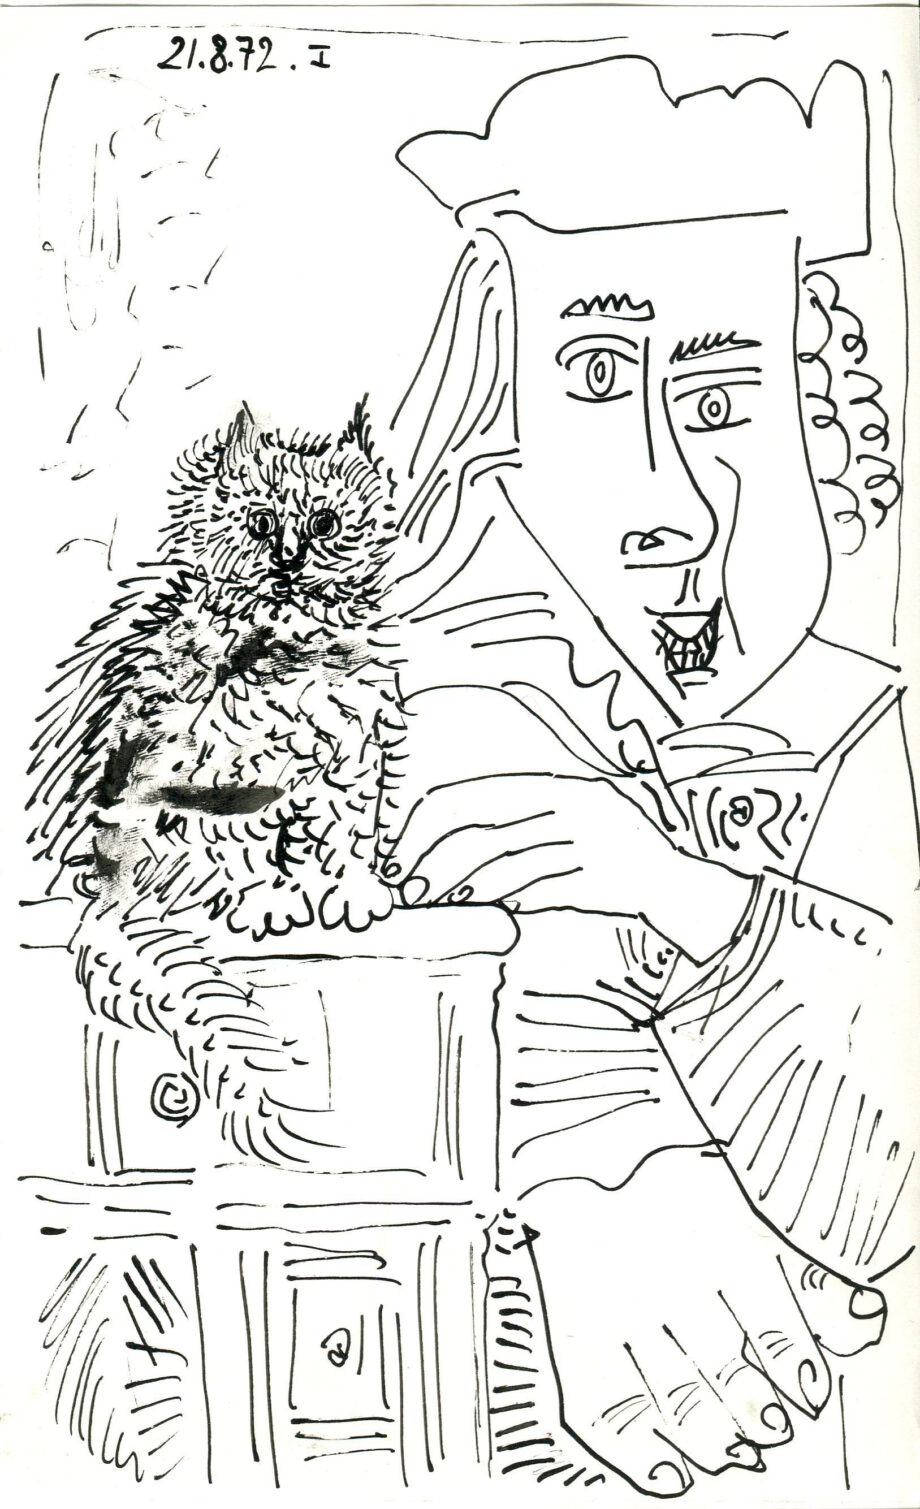 homme au chat - Raymond Debiève- 22,5x14cm - encre de chine - 180 euros